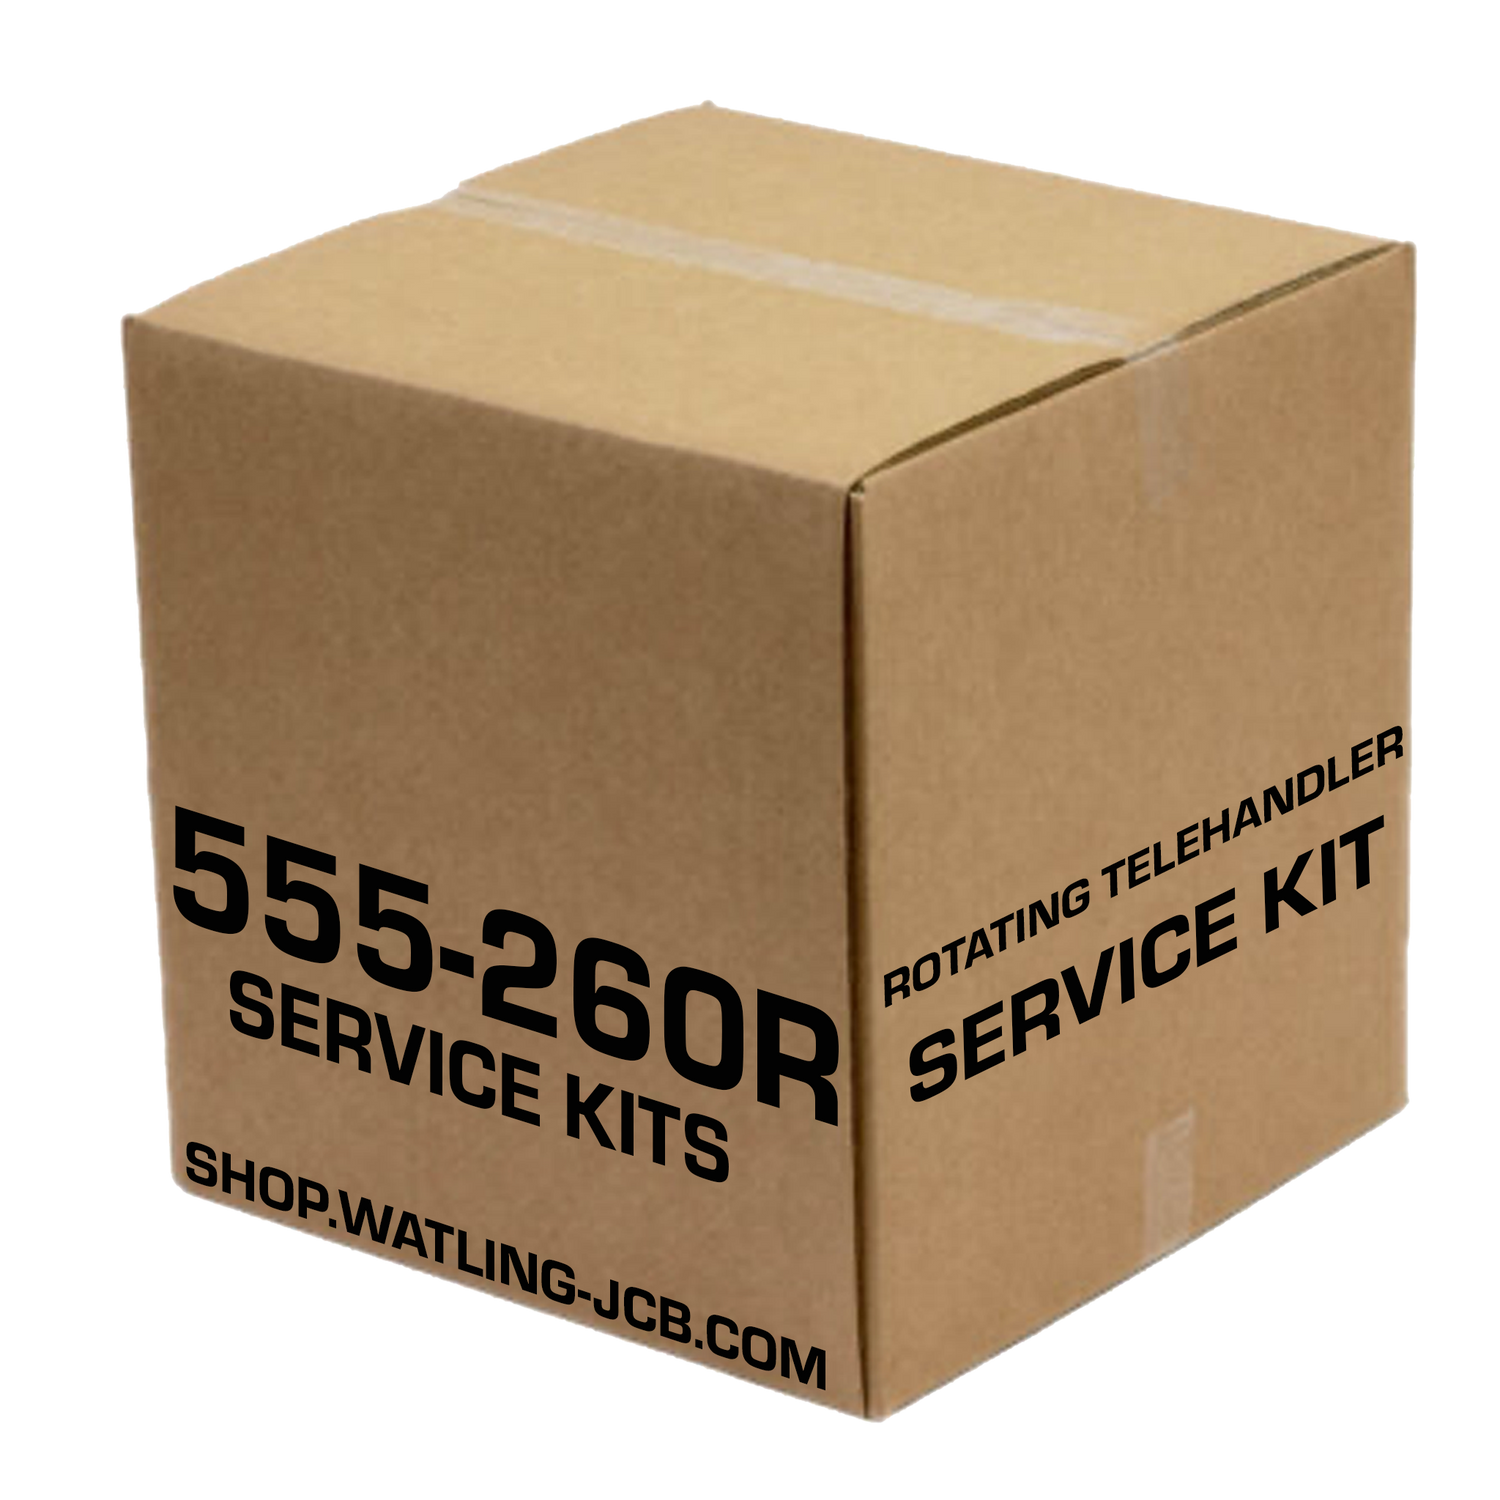 JCB 555-260R Filter Kits